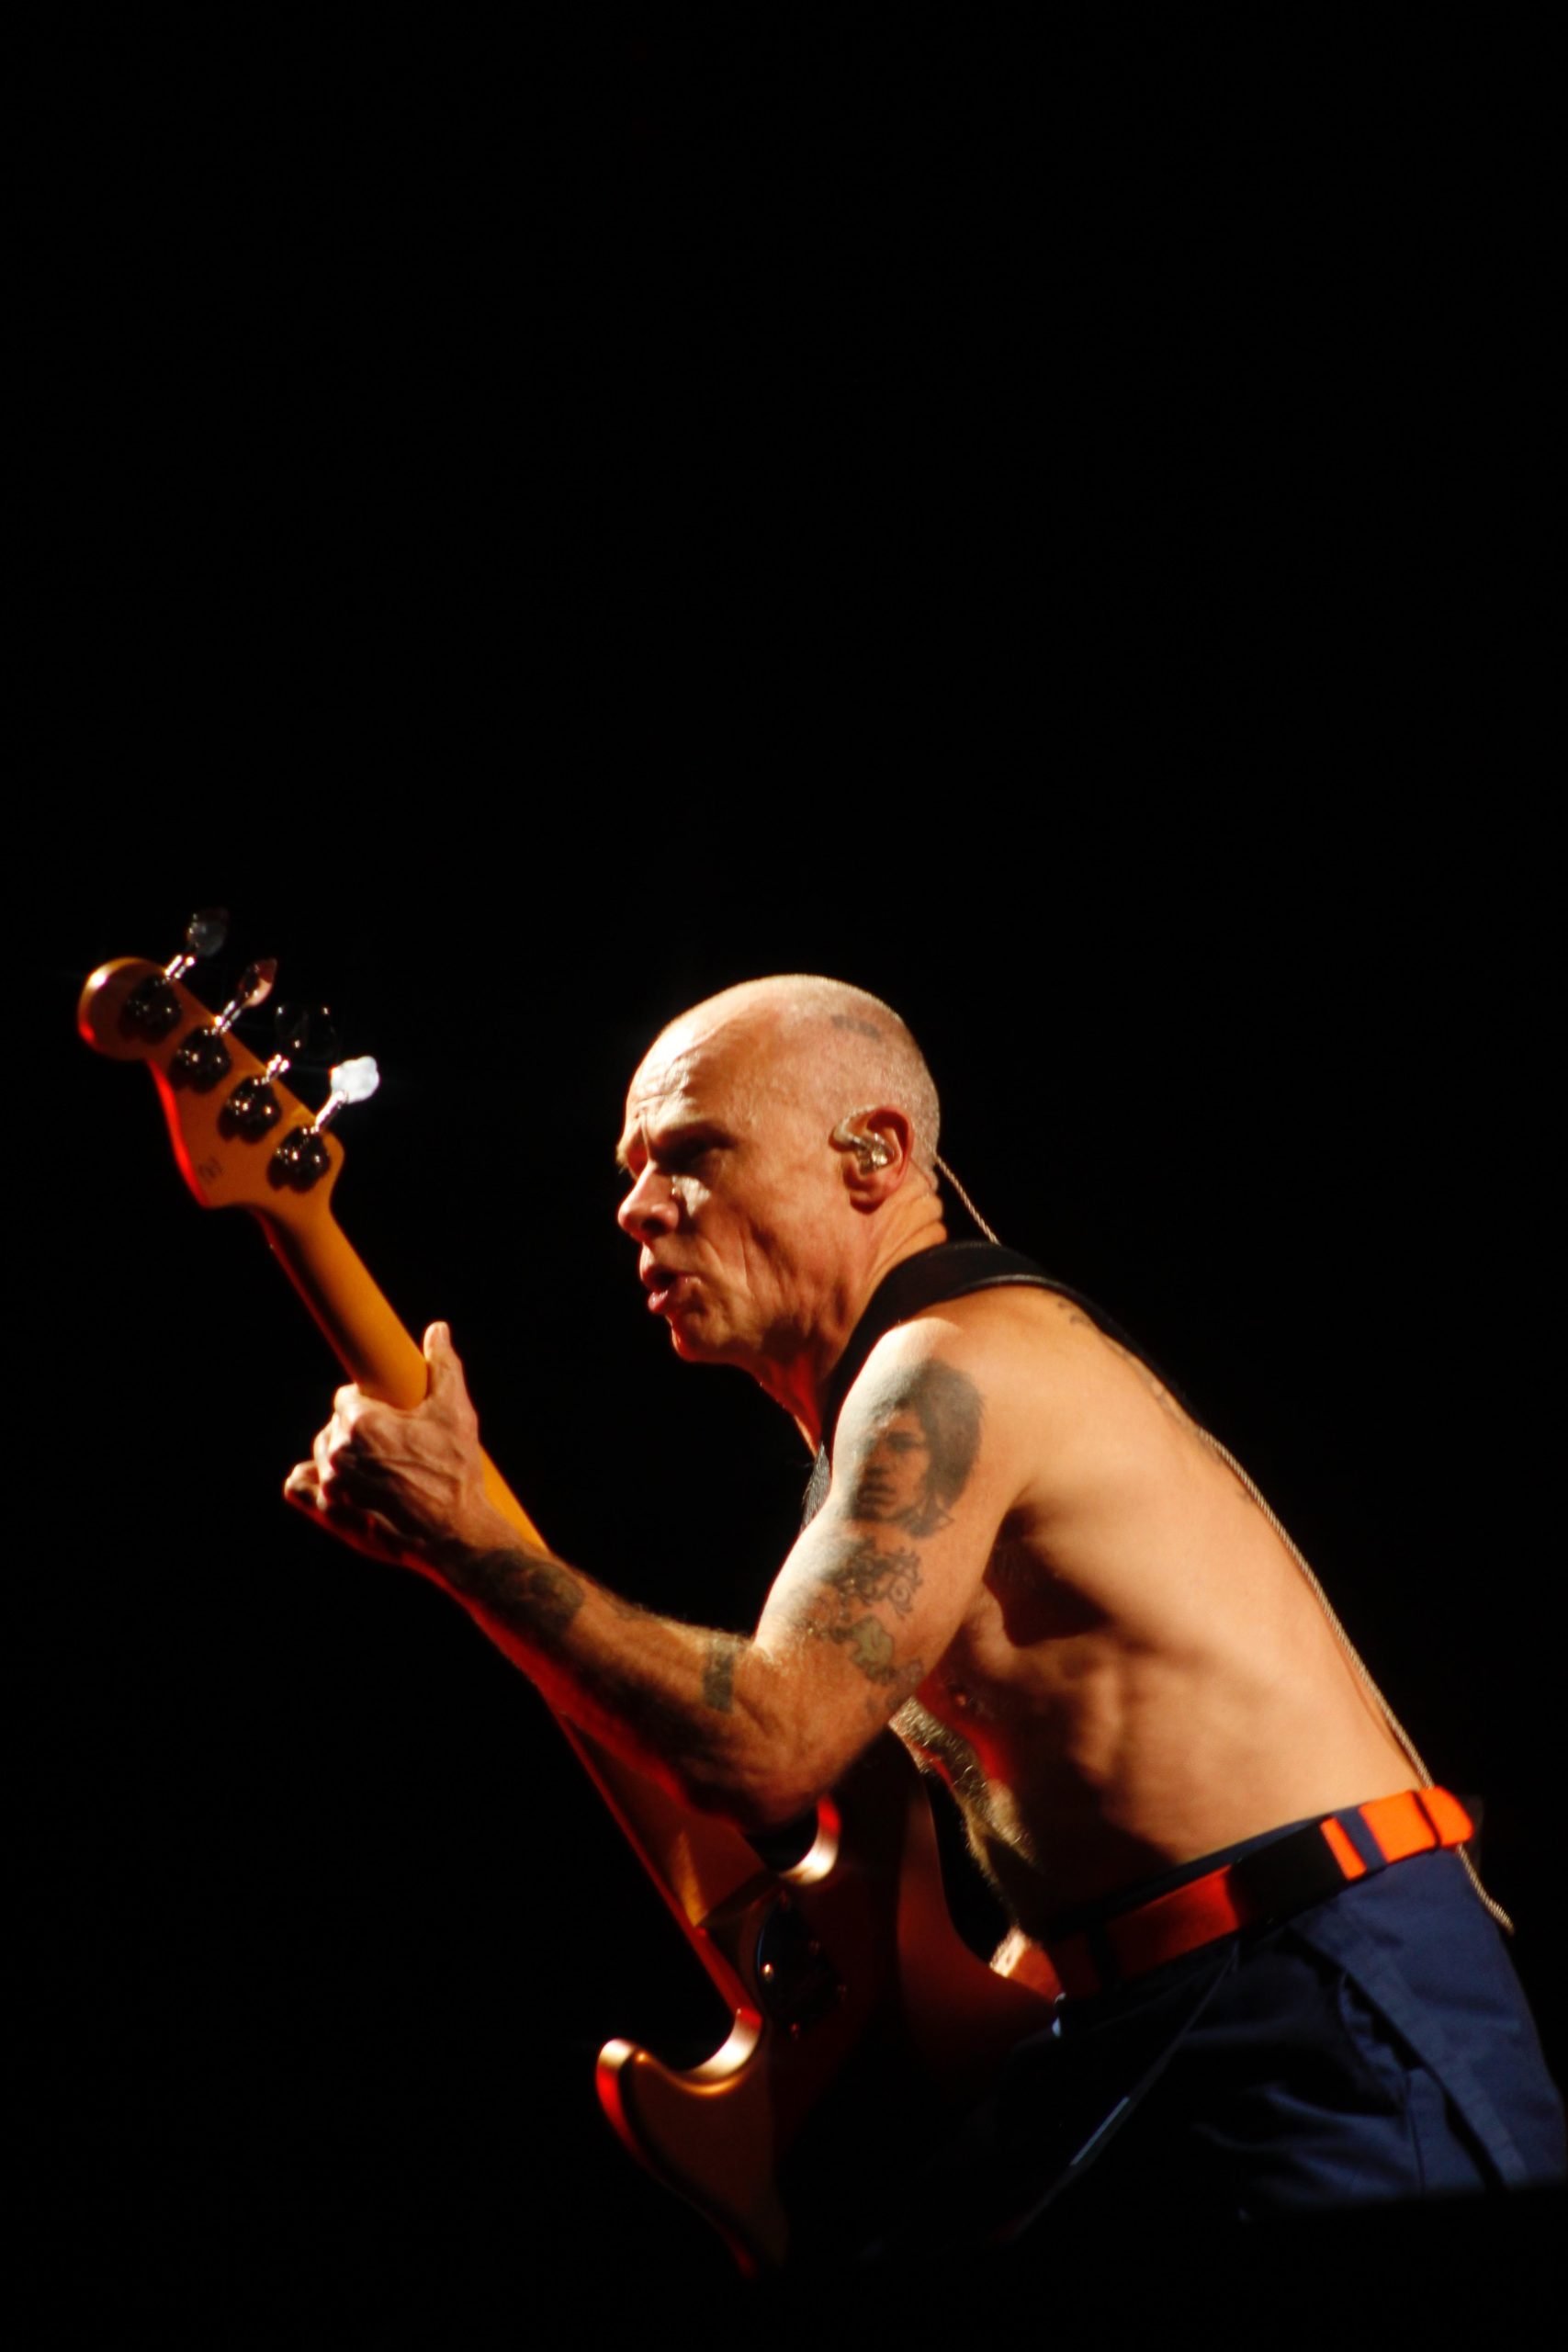 Red Hot Chili Peppers em São Paulo. Créditos: Marcela Lorenzetti